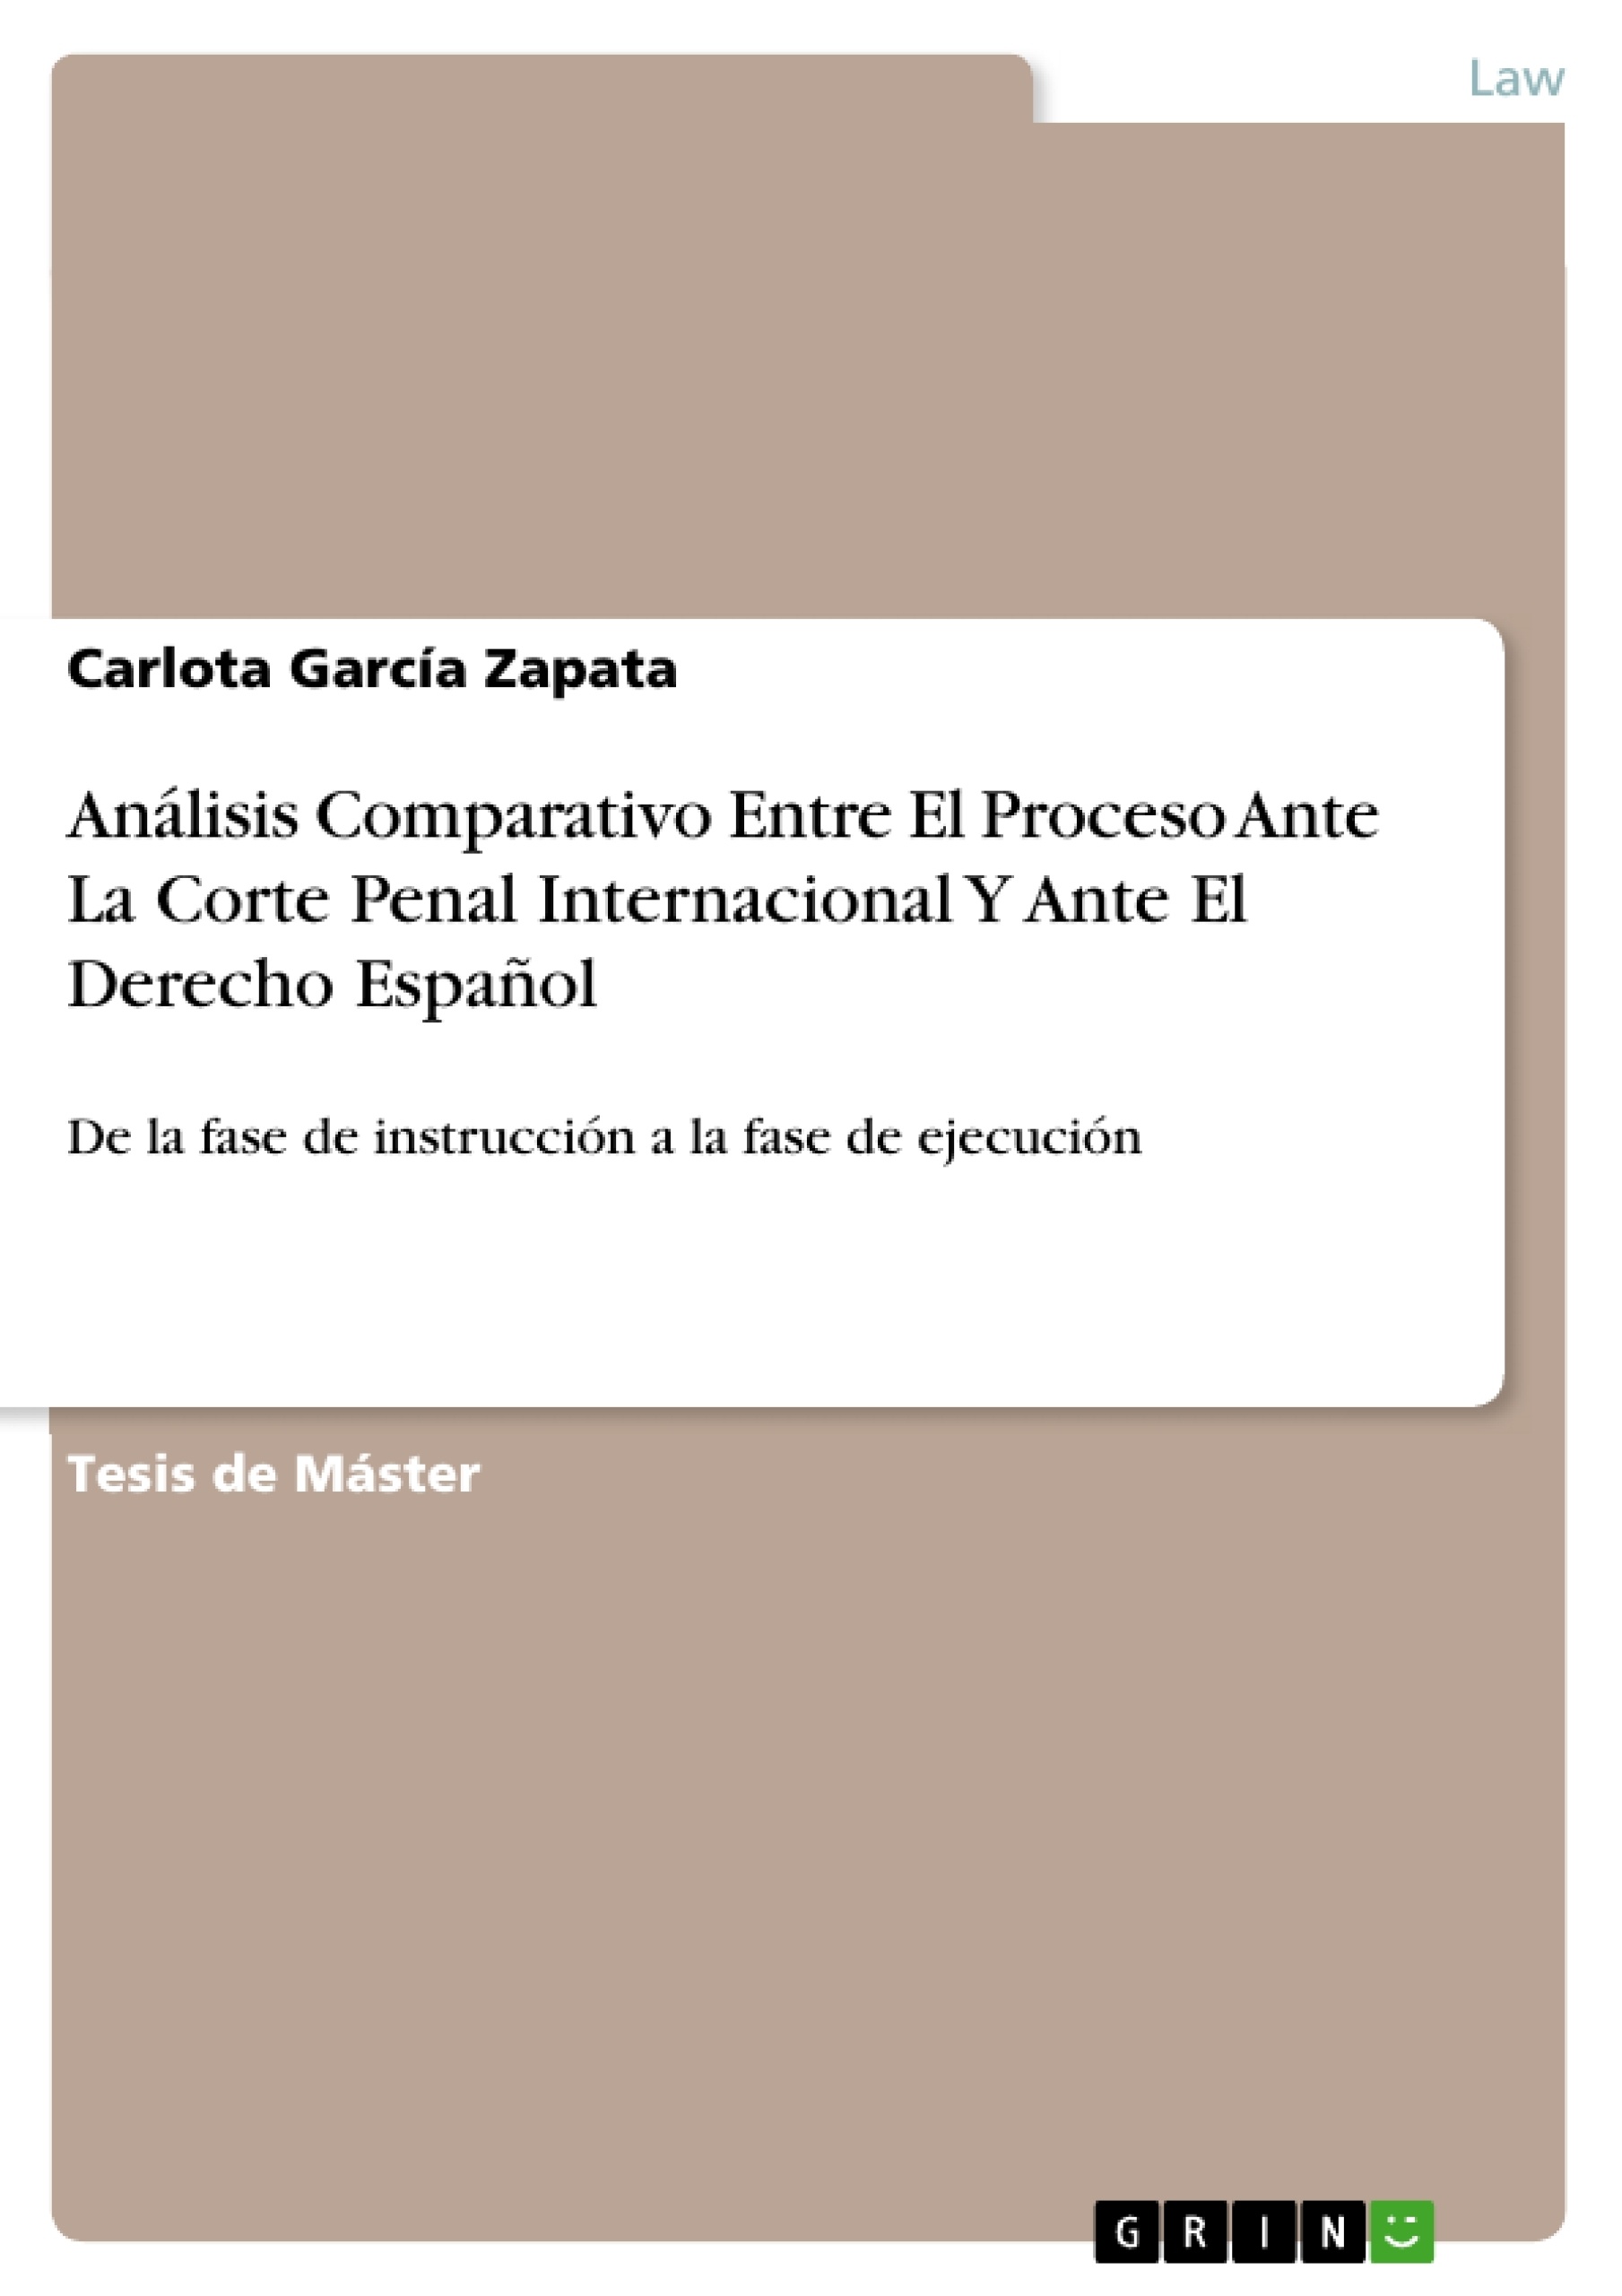 Título: Análisis Comparativo Entre El Proceso Ante La Corte Penal Internacional Y Ante El Derecho Español